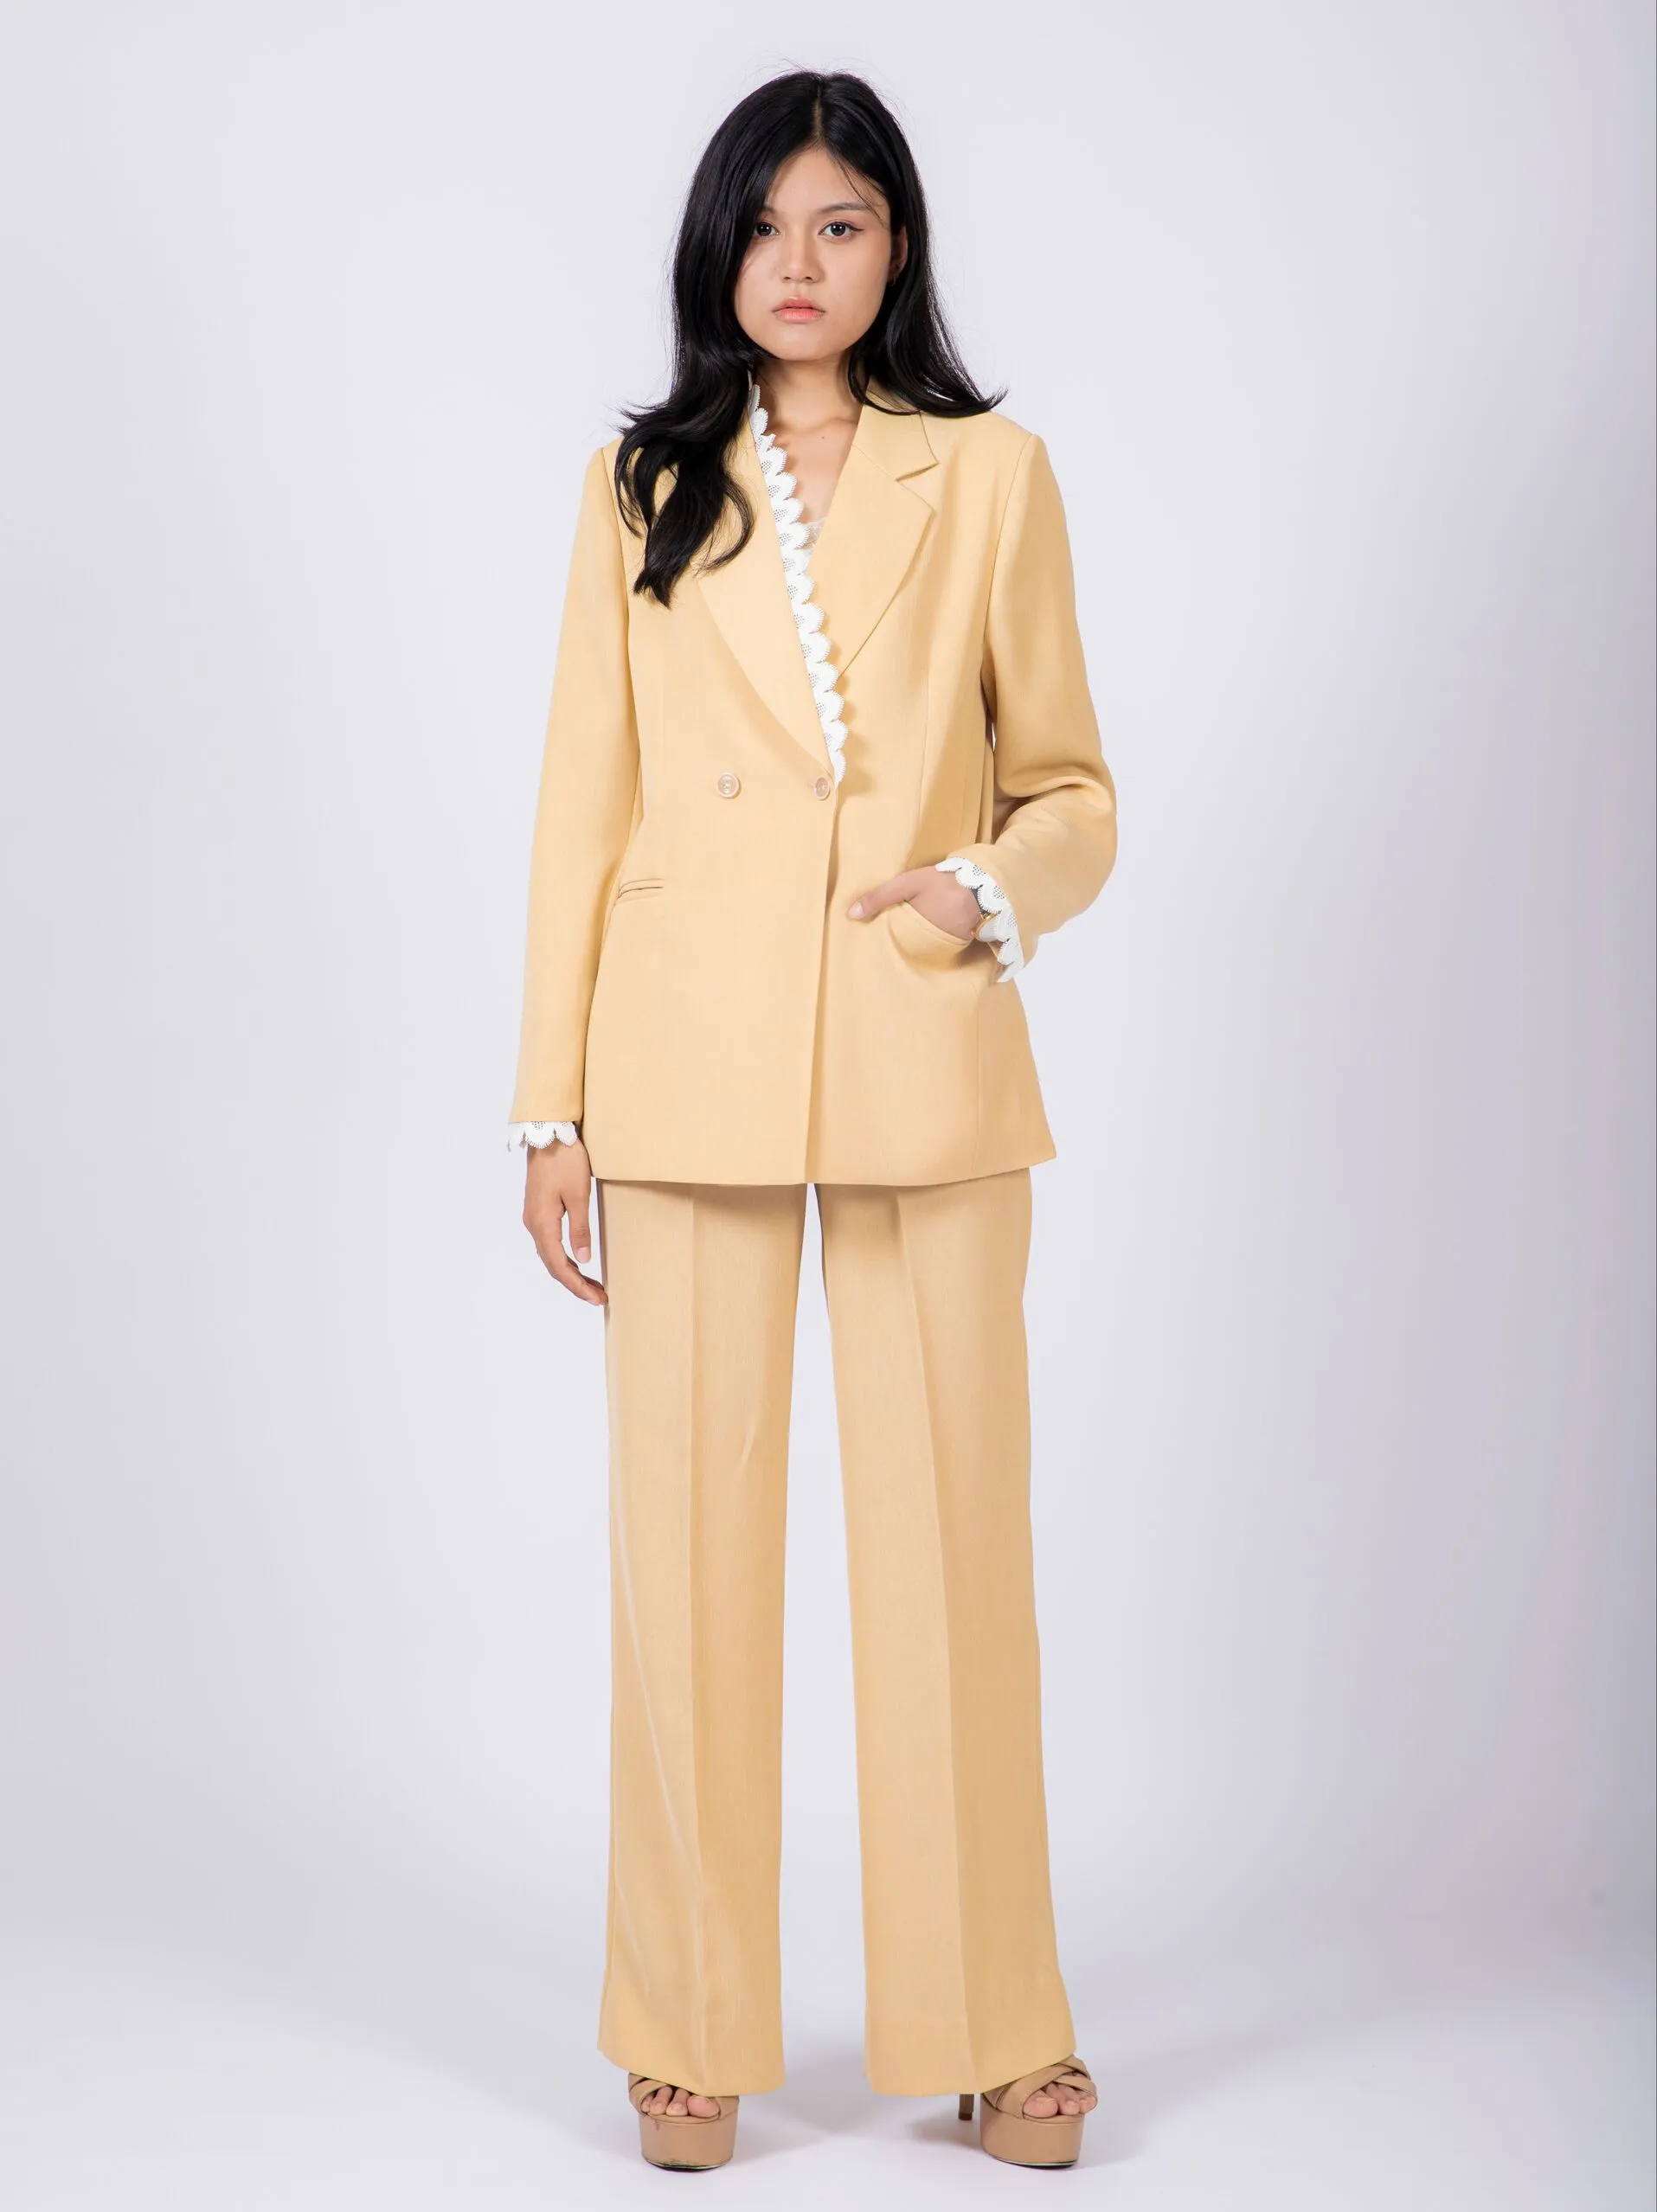 Vero Moda tailored leather look suit blazer in cream | ASOS